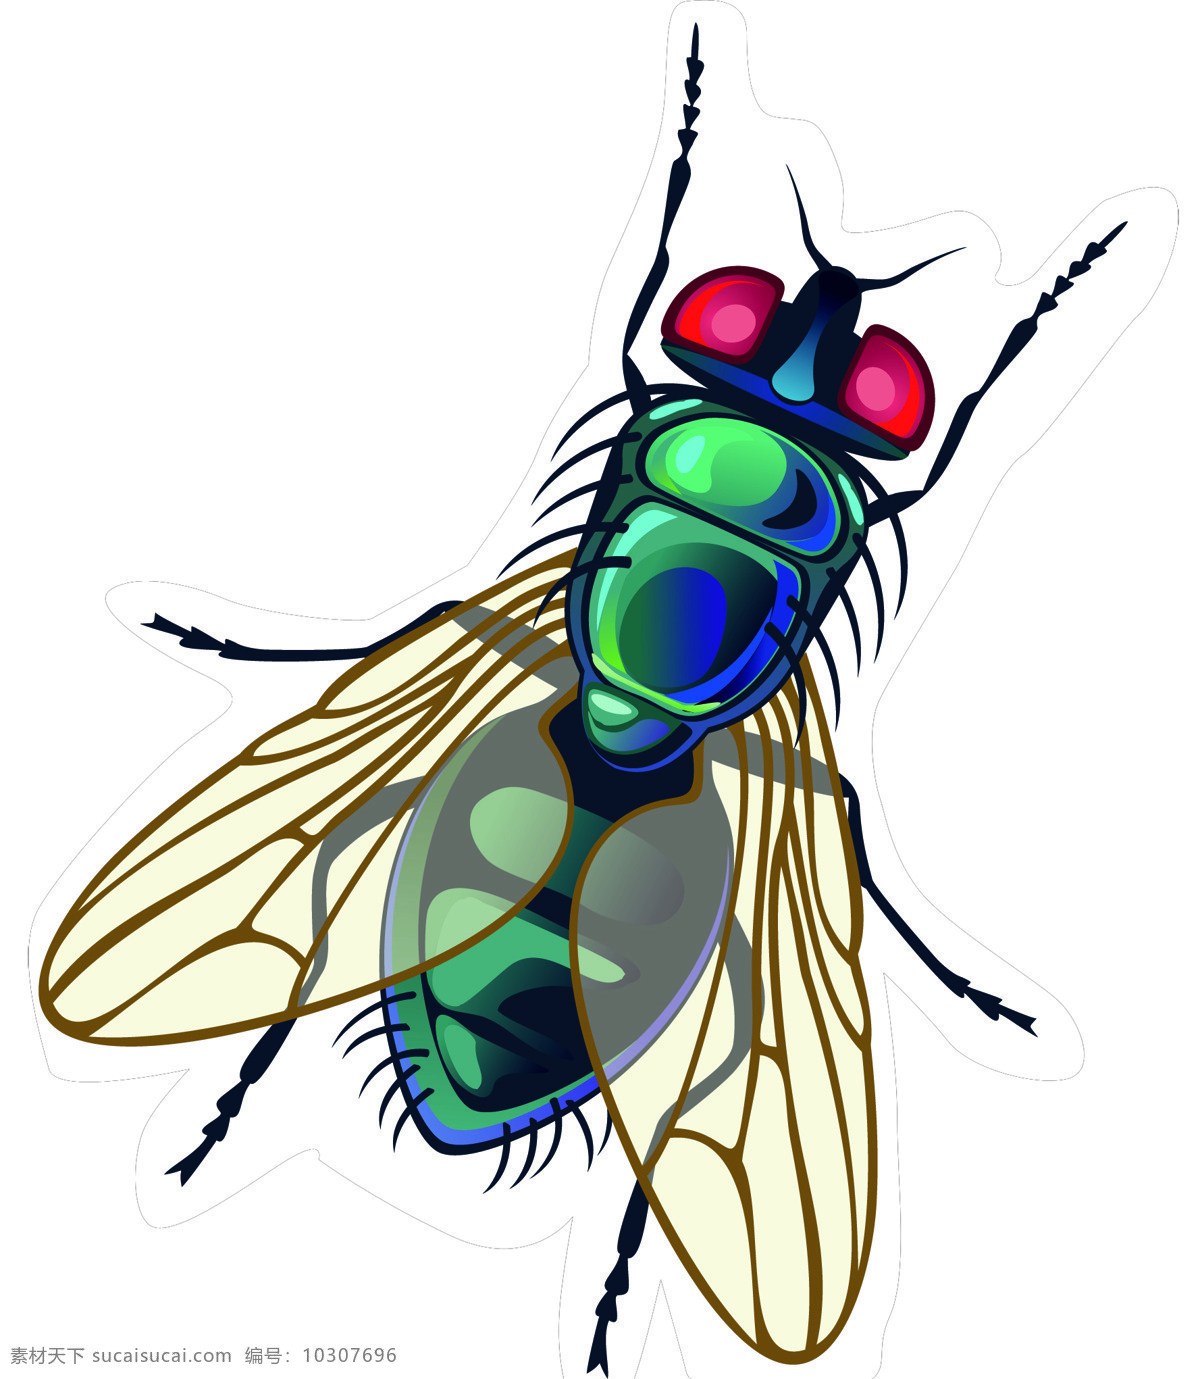 昆虫图片 昆虫 苍蝇 卡通 造型 矢量图